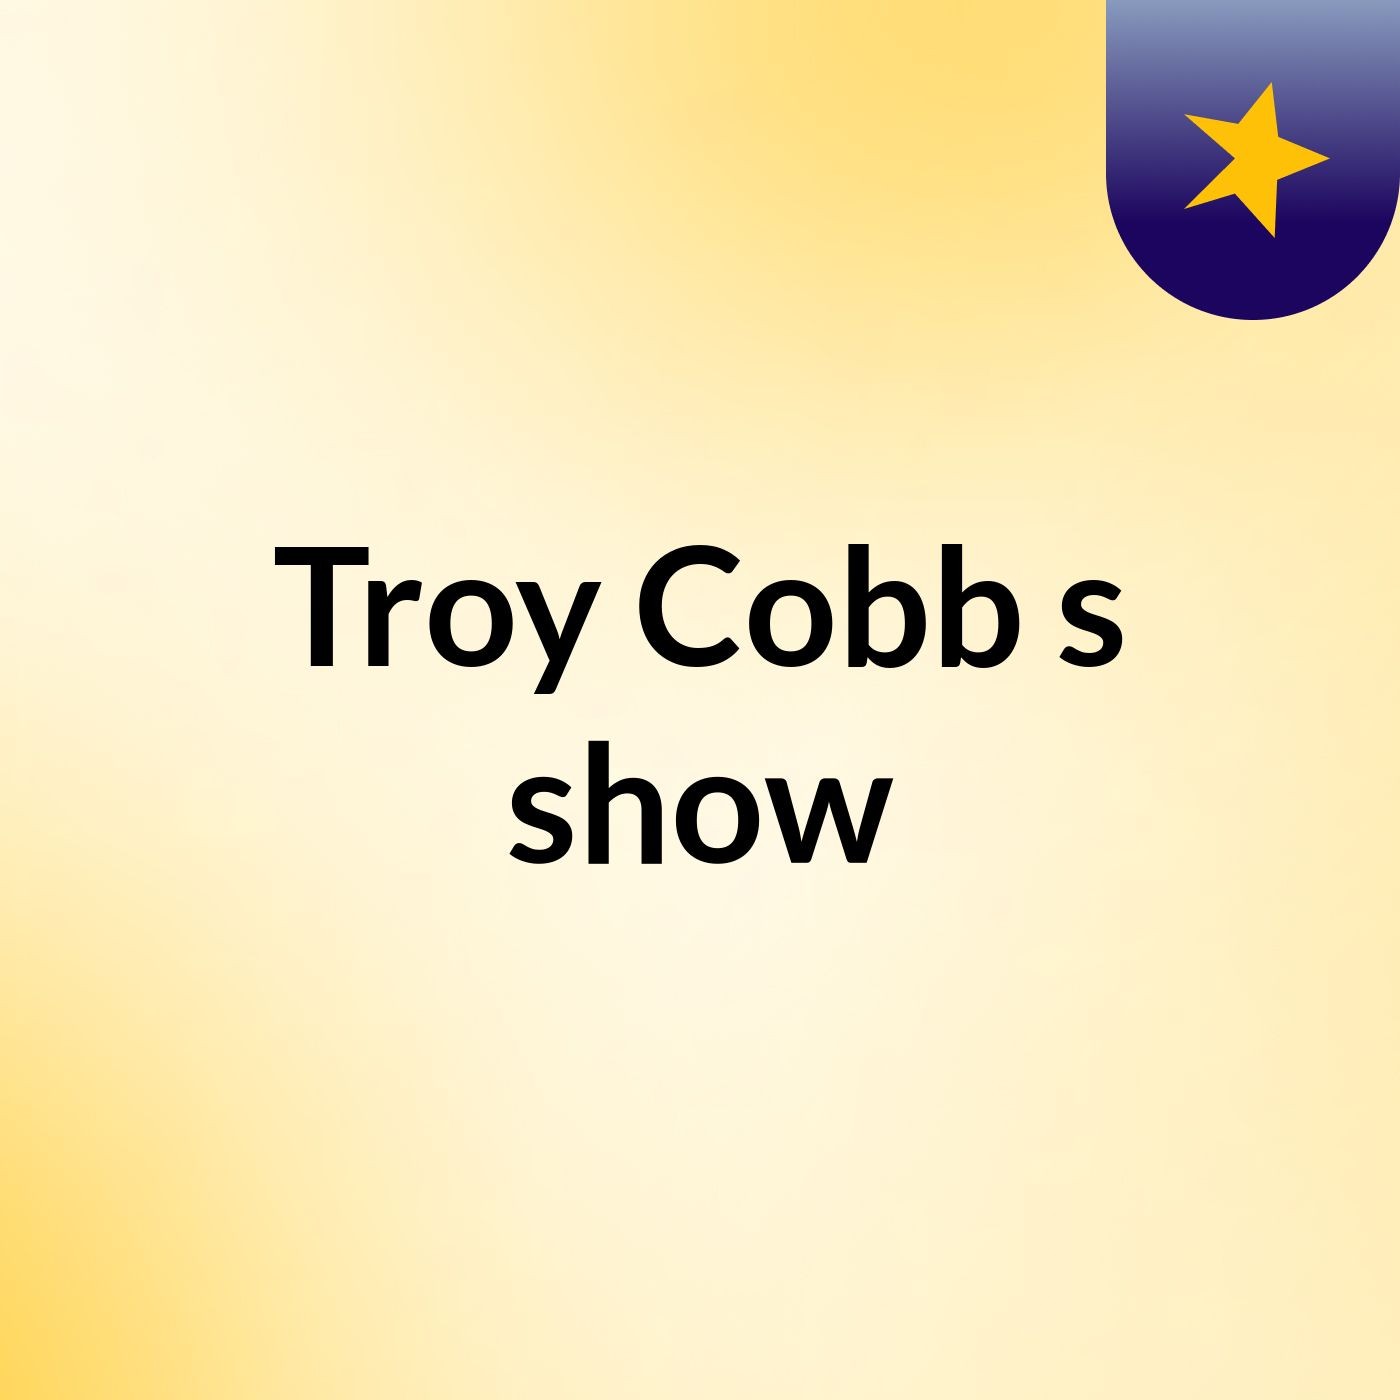 Troy Cobb's show